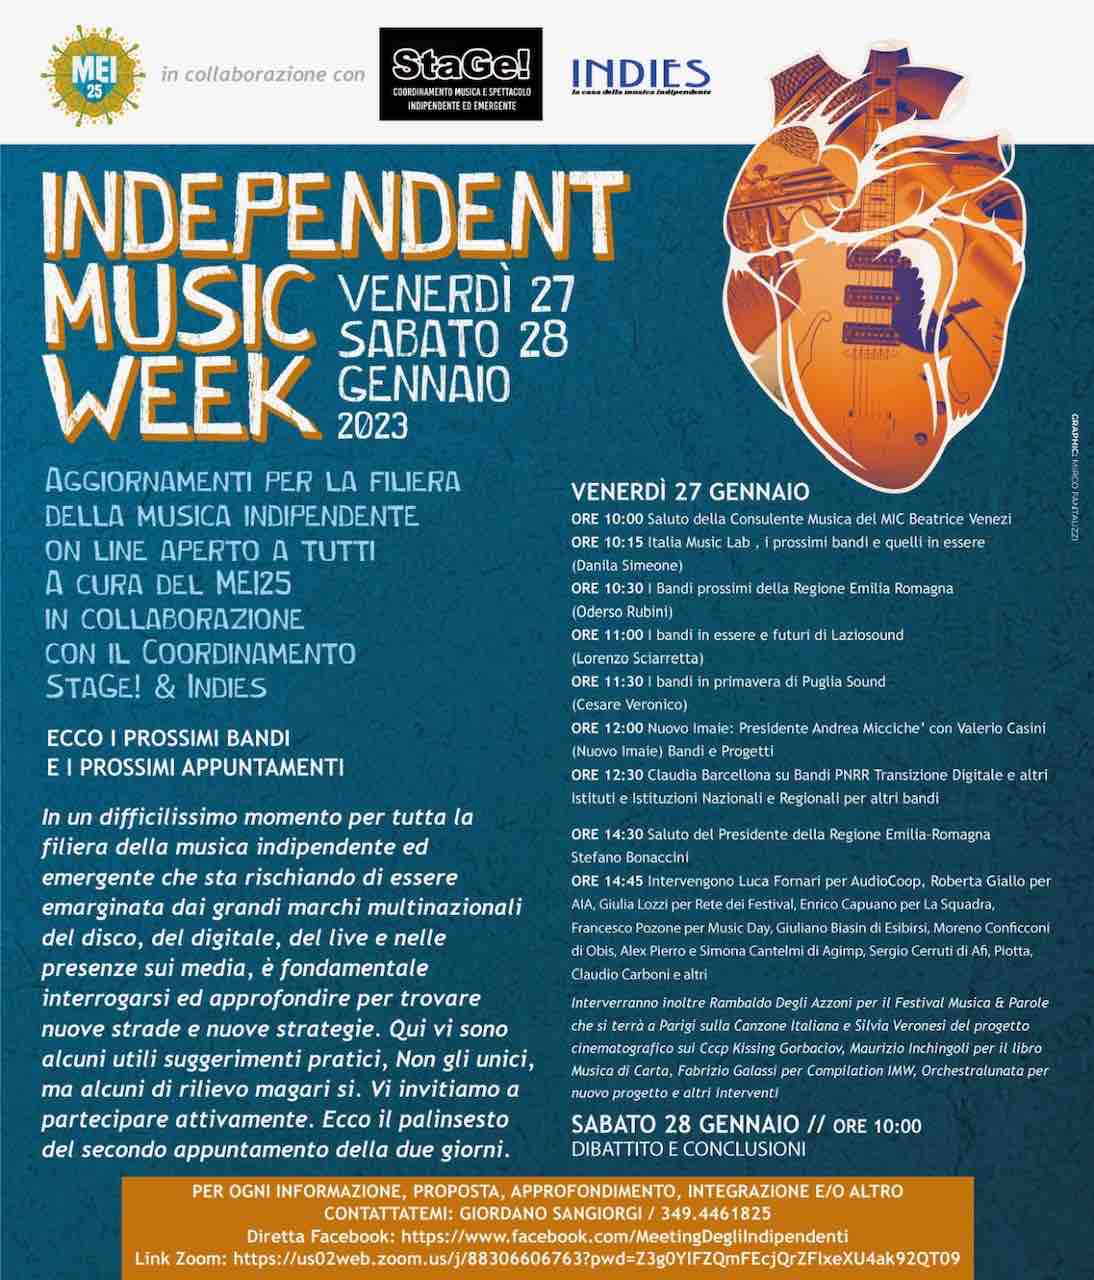 Ecco tutto il Convegno dell’Independent Music Week a Cura del MEI. In apertura i Saluti del Sottosegretario alla Cultura Gianmarco Mazzi, della Delegata alla Musica del MIC Beatrice Venezi e del Presidente della Regione Emilia Romagna Stefano Bonaccini.